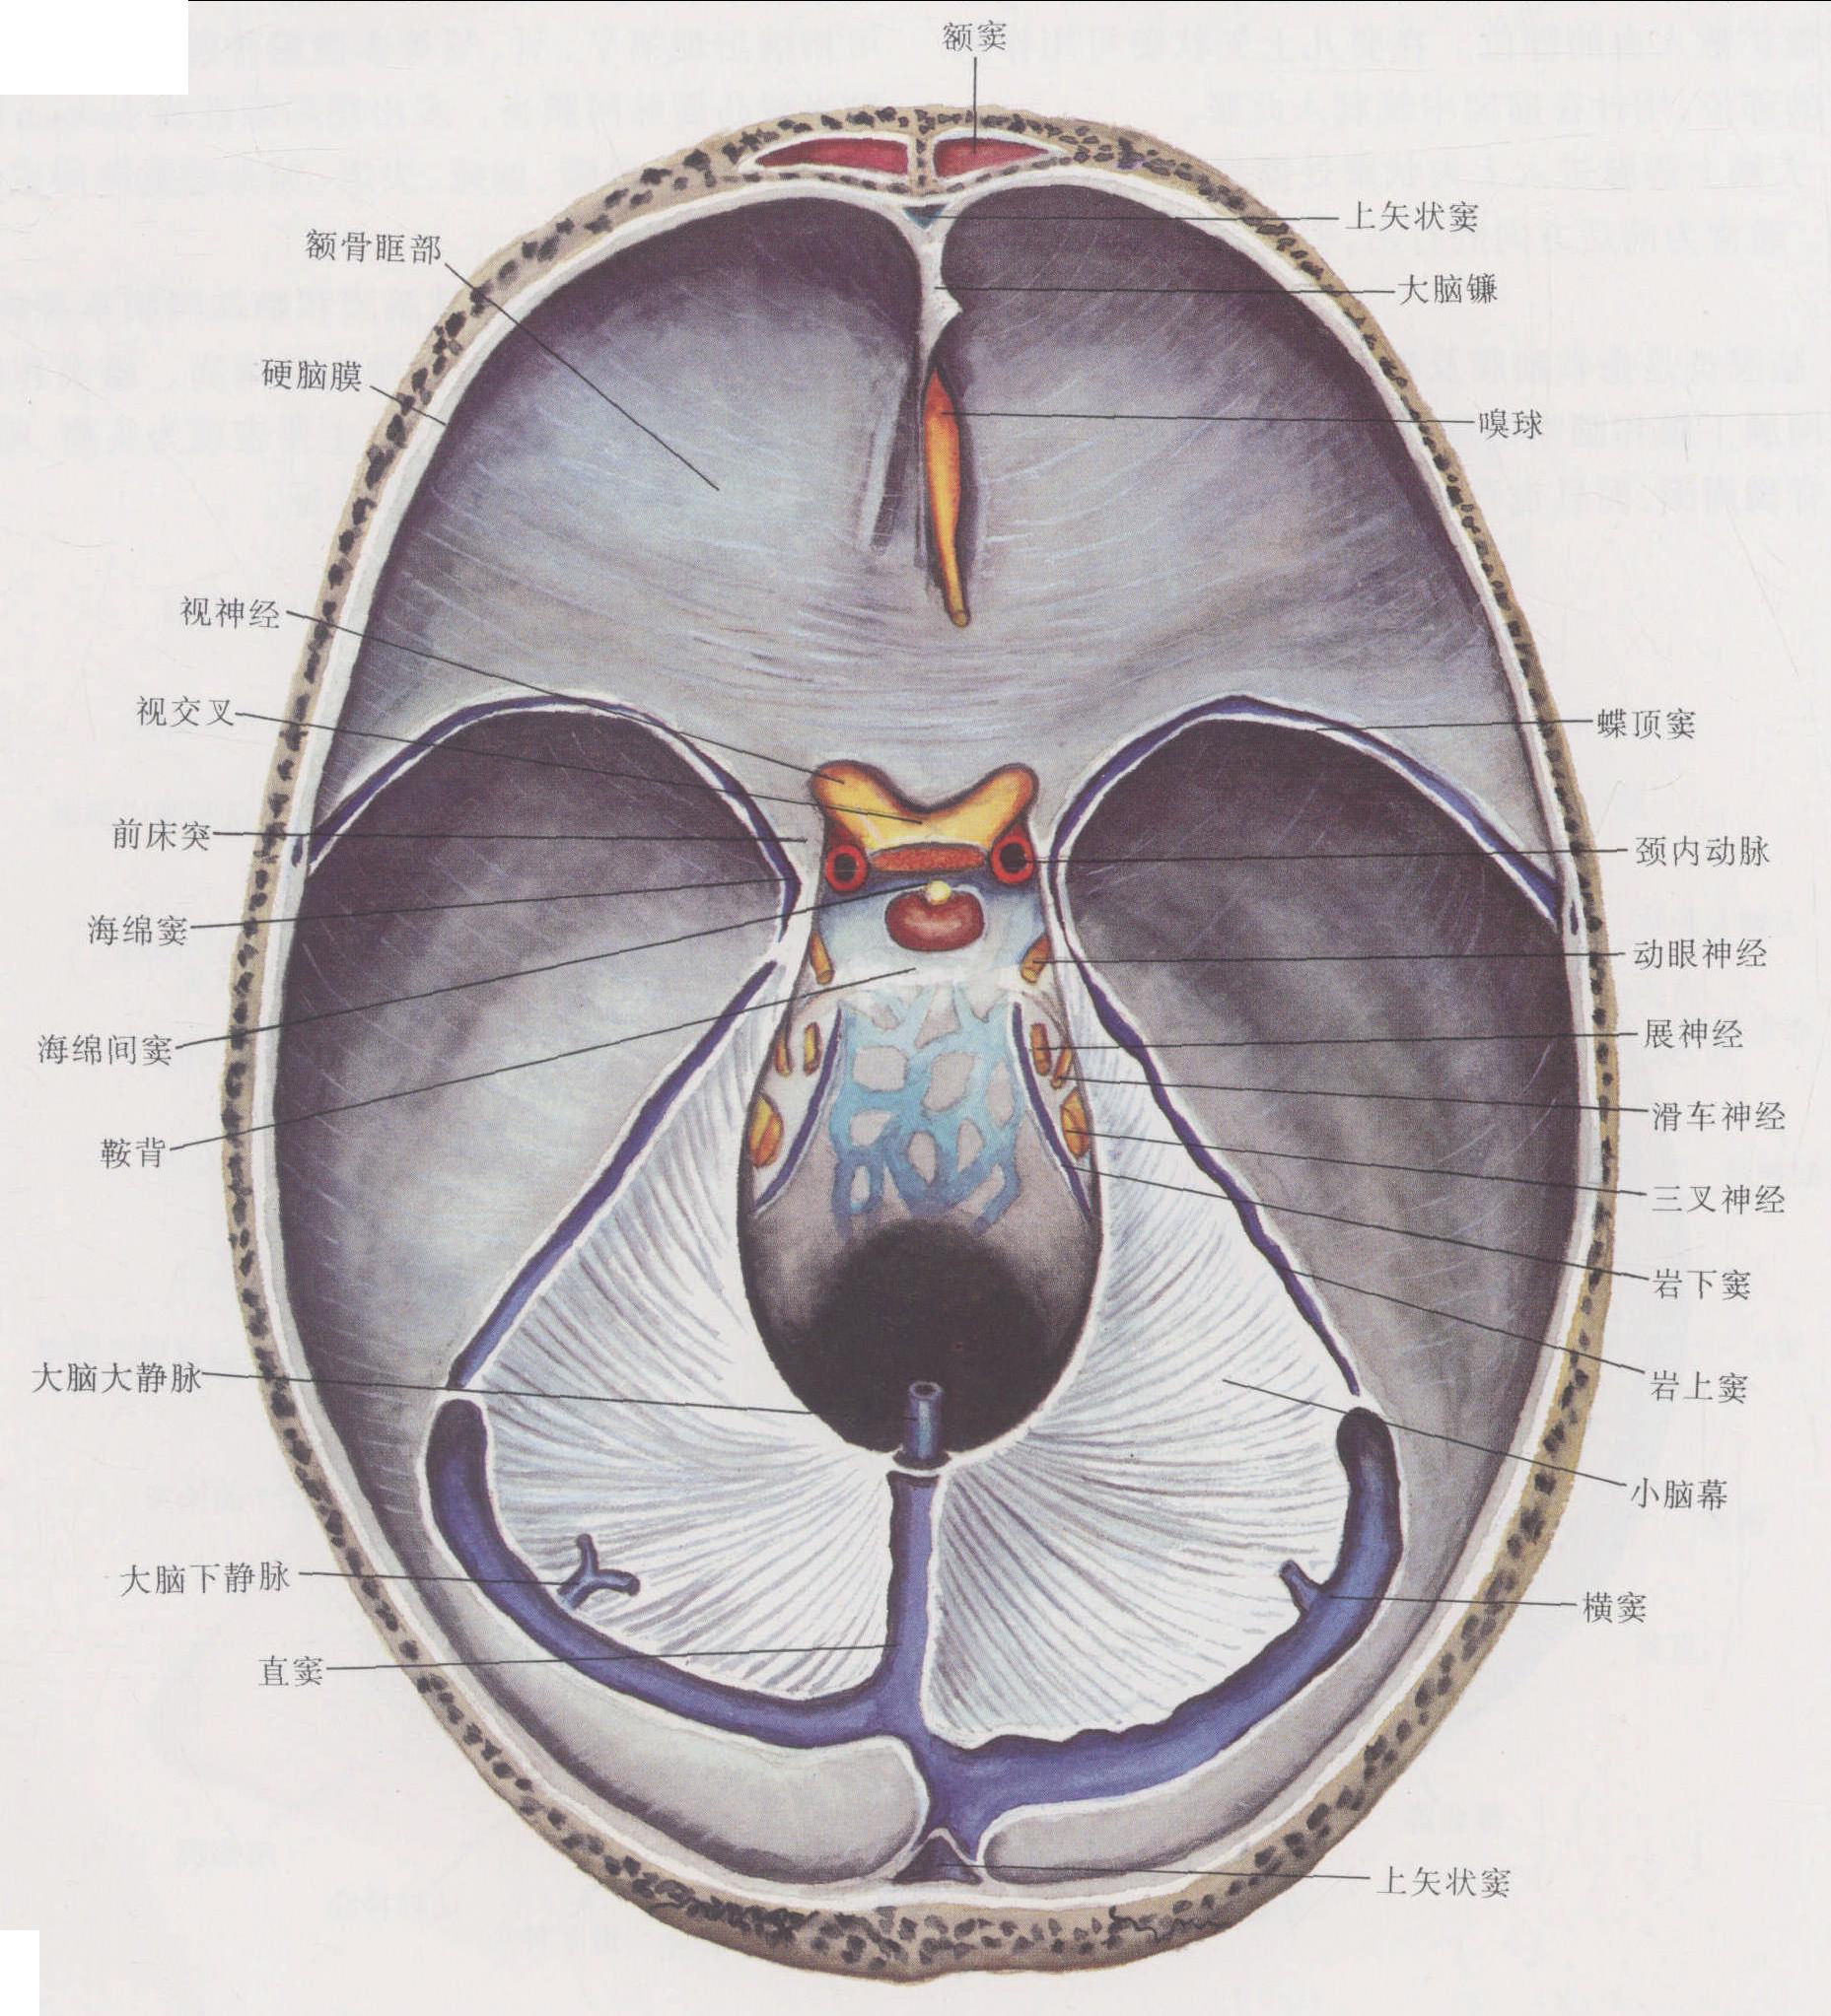 图1-10 硬脑膜及硬脑膜窦 颅底内面观